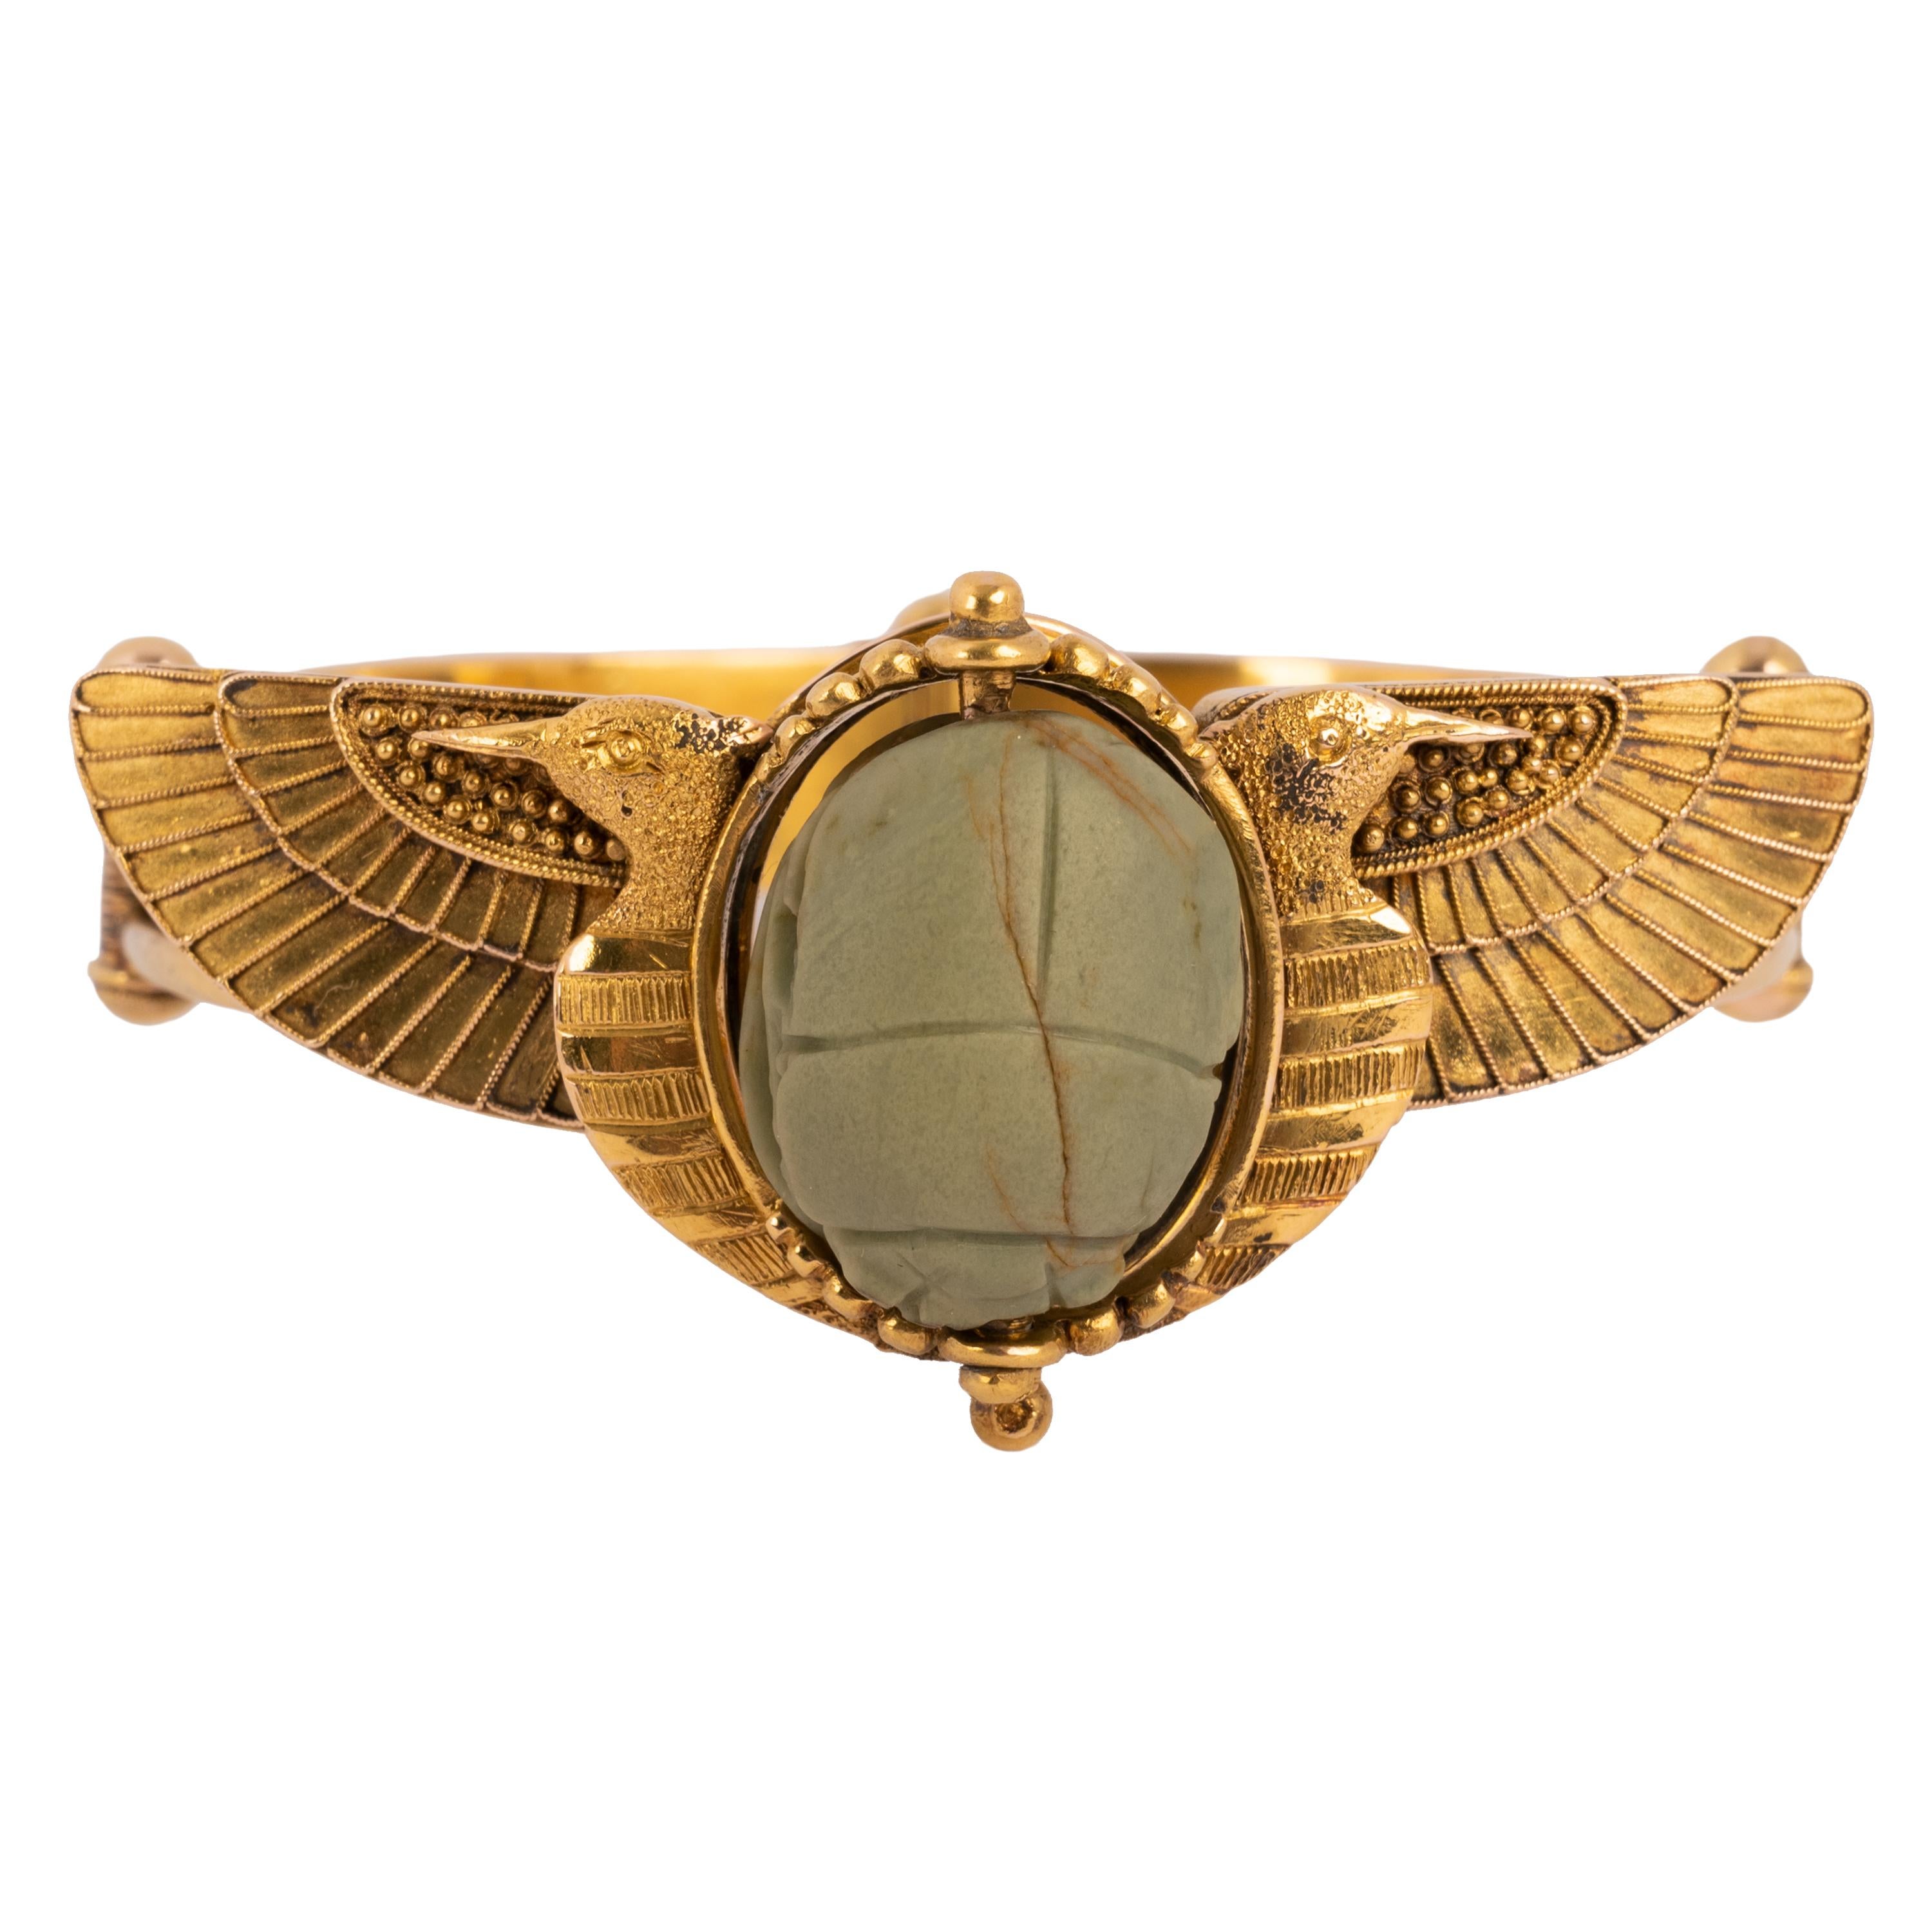 Rare bracelet ancien en or 22 carats de style néo-égyptien, vers 1870. Poids d'or 38.10 grammes.
Ce bracelet en or continental est testé comme étant de l'or 22 carats et est équipé d'un scarabée égyptien antique en faïence verte, gravé de